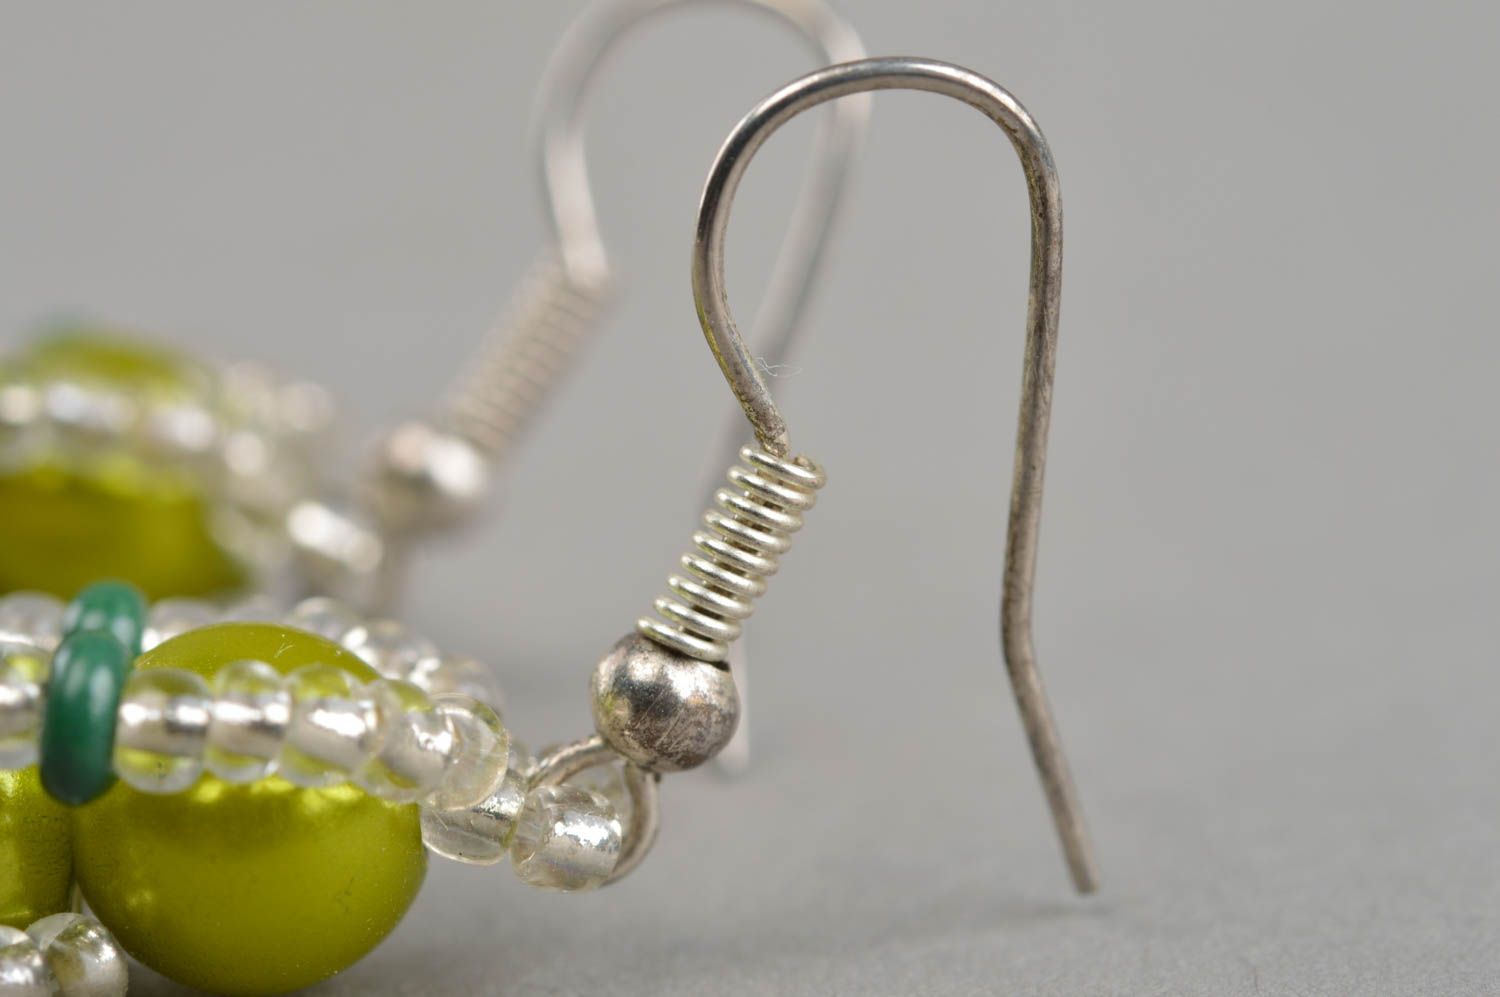 Stylish handmade beaded earrings designer earrings woven of beads gift ideas photo 4